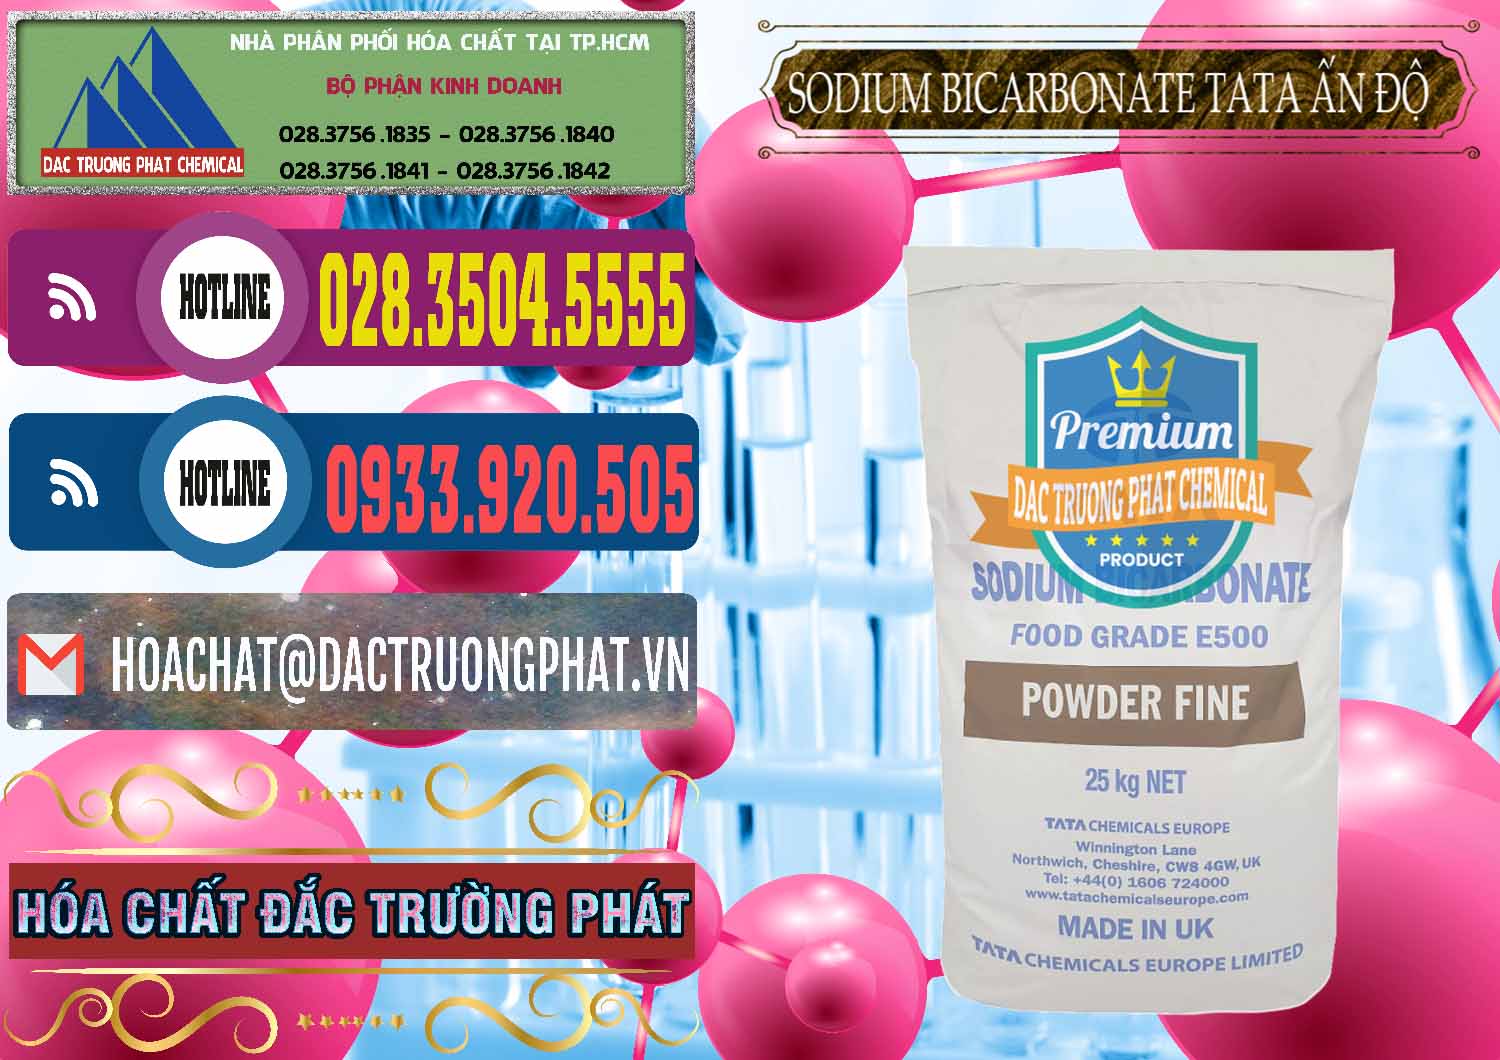 Cty chuyên bán _ cung ứng Sodium Bicarbonate – Bicar NaHCO3 E500 Thực Phẩm Food Grade Tata Ấn Độ India - 0261 - Nơi chuyên phân phối & nhập khẩu hóa chất tại TP.HCM - muabanhoachat.com.vn